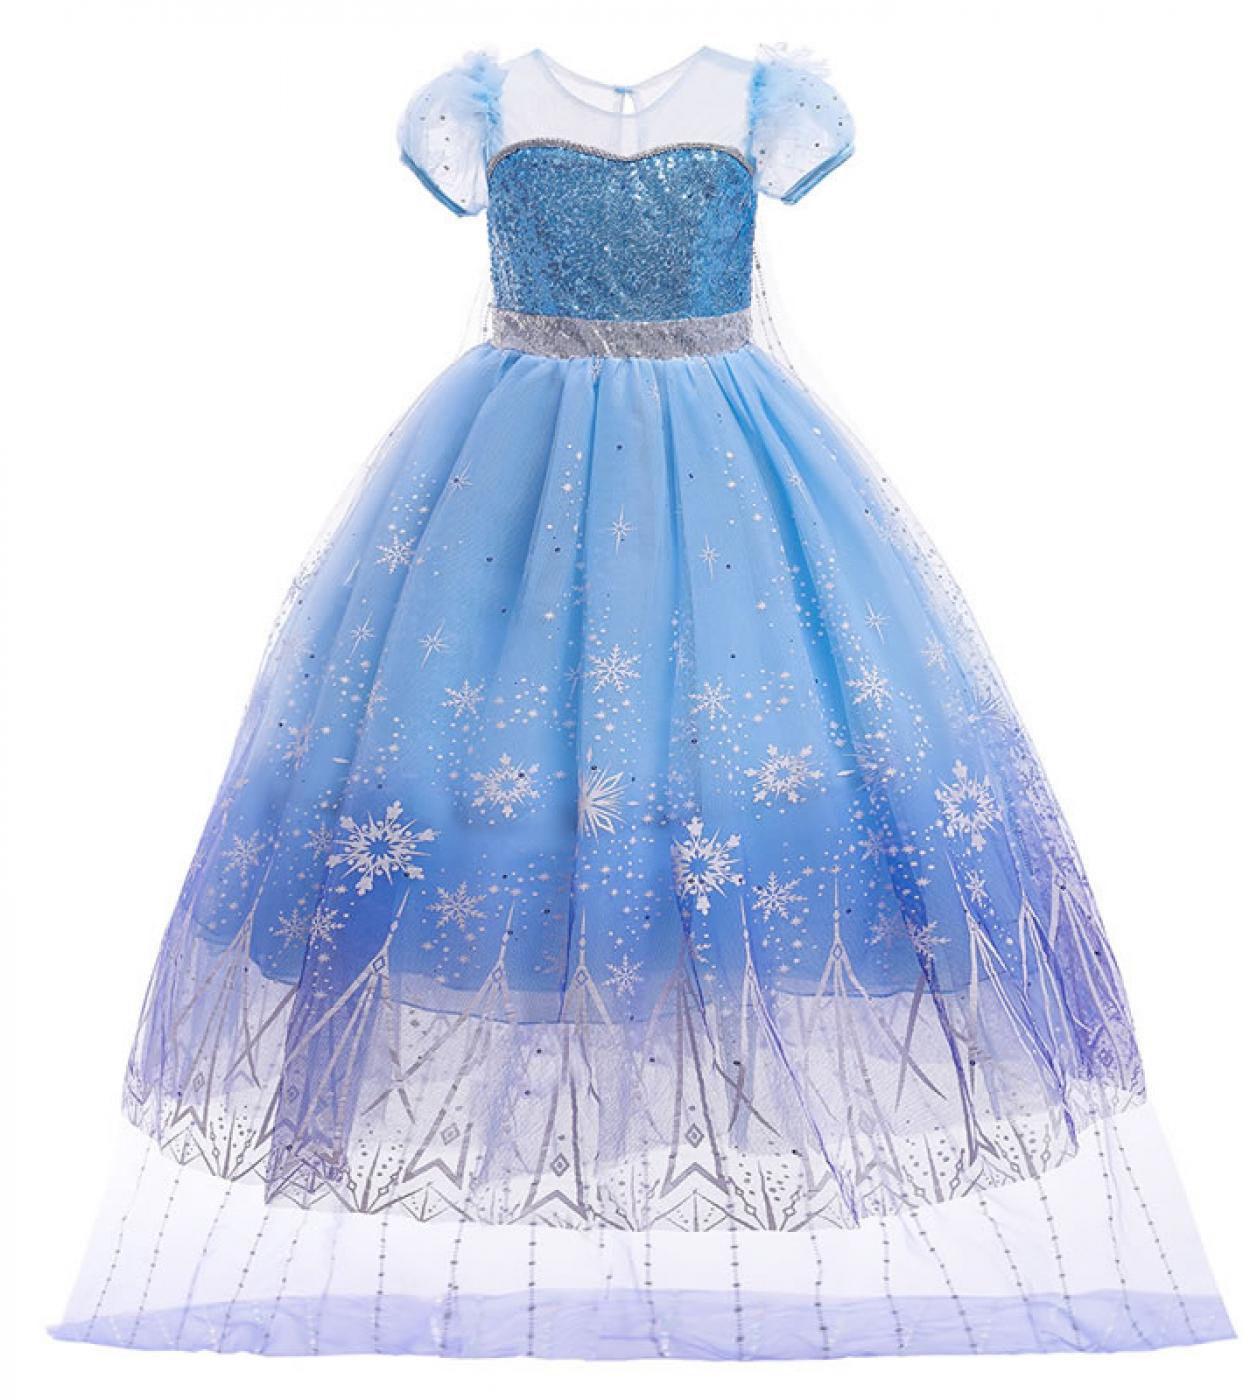 فستان ملكة الثلج إلسا للبنات أزياء تنكرية للهالوين للأطفال عباءة من الدانتيل مطرزة بالترتر فستان تونك للأطفال للحفلات G